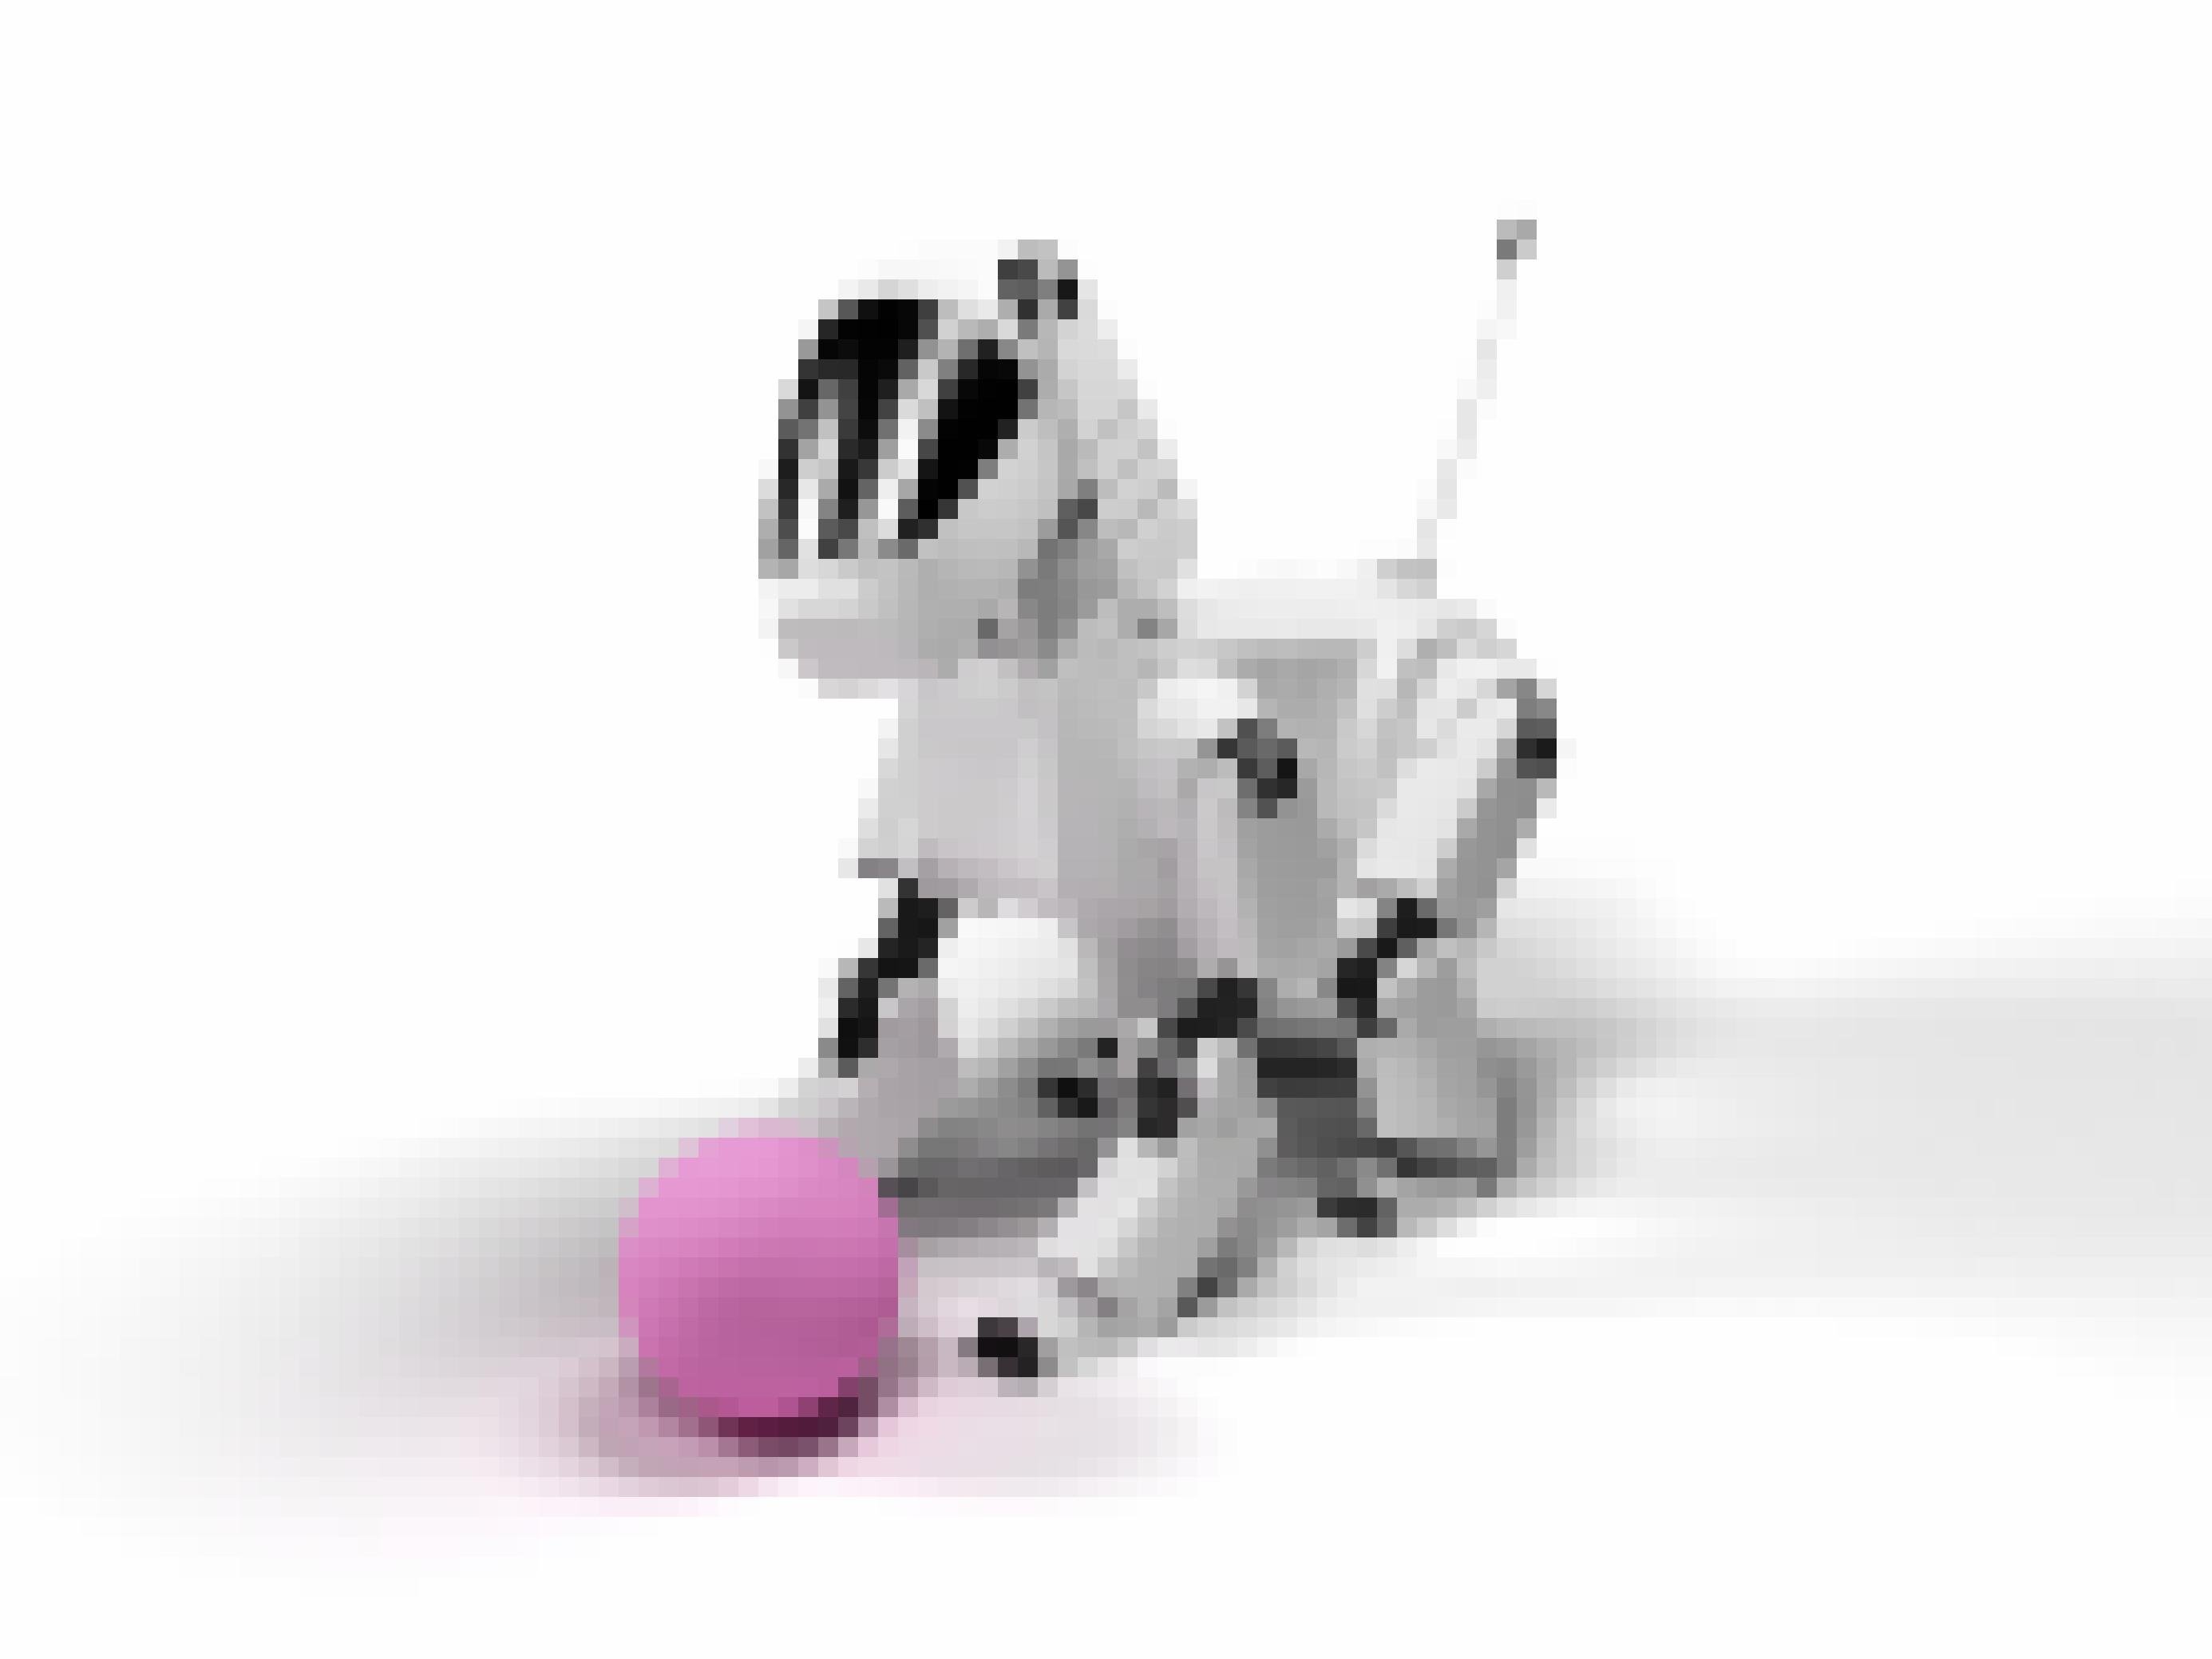 Ein weißer Roboterhund mit pinkfarbenem kleinem Ball vor den Vorderpfoten